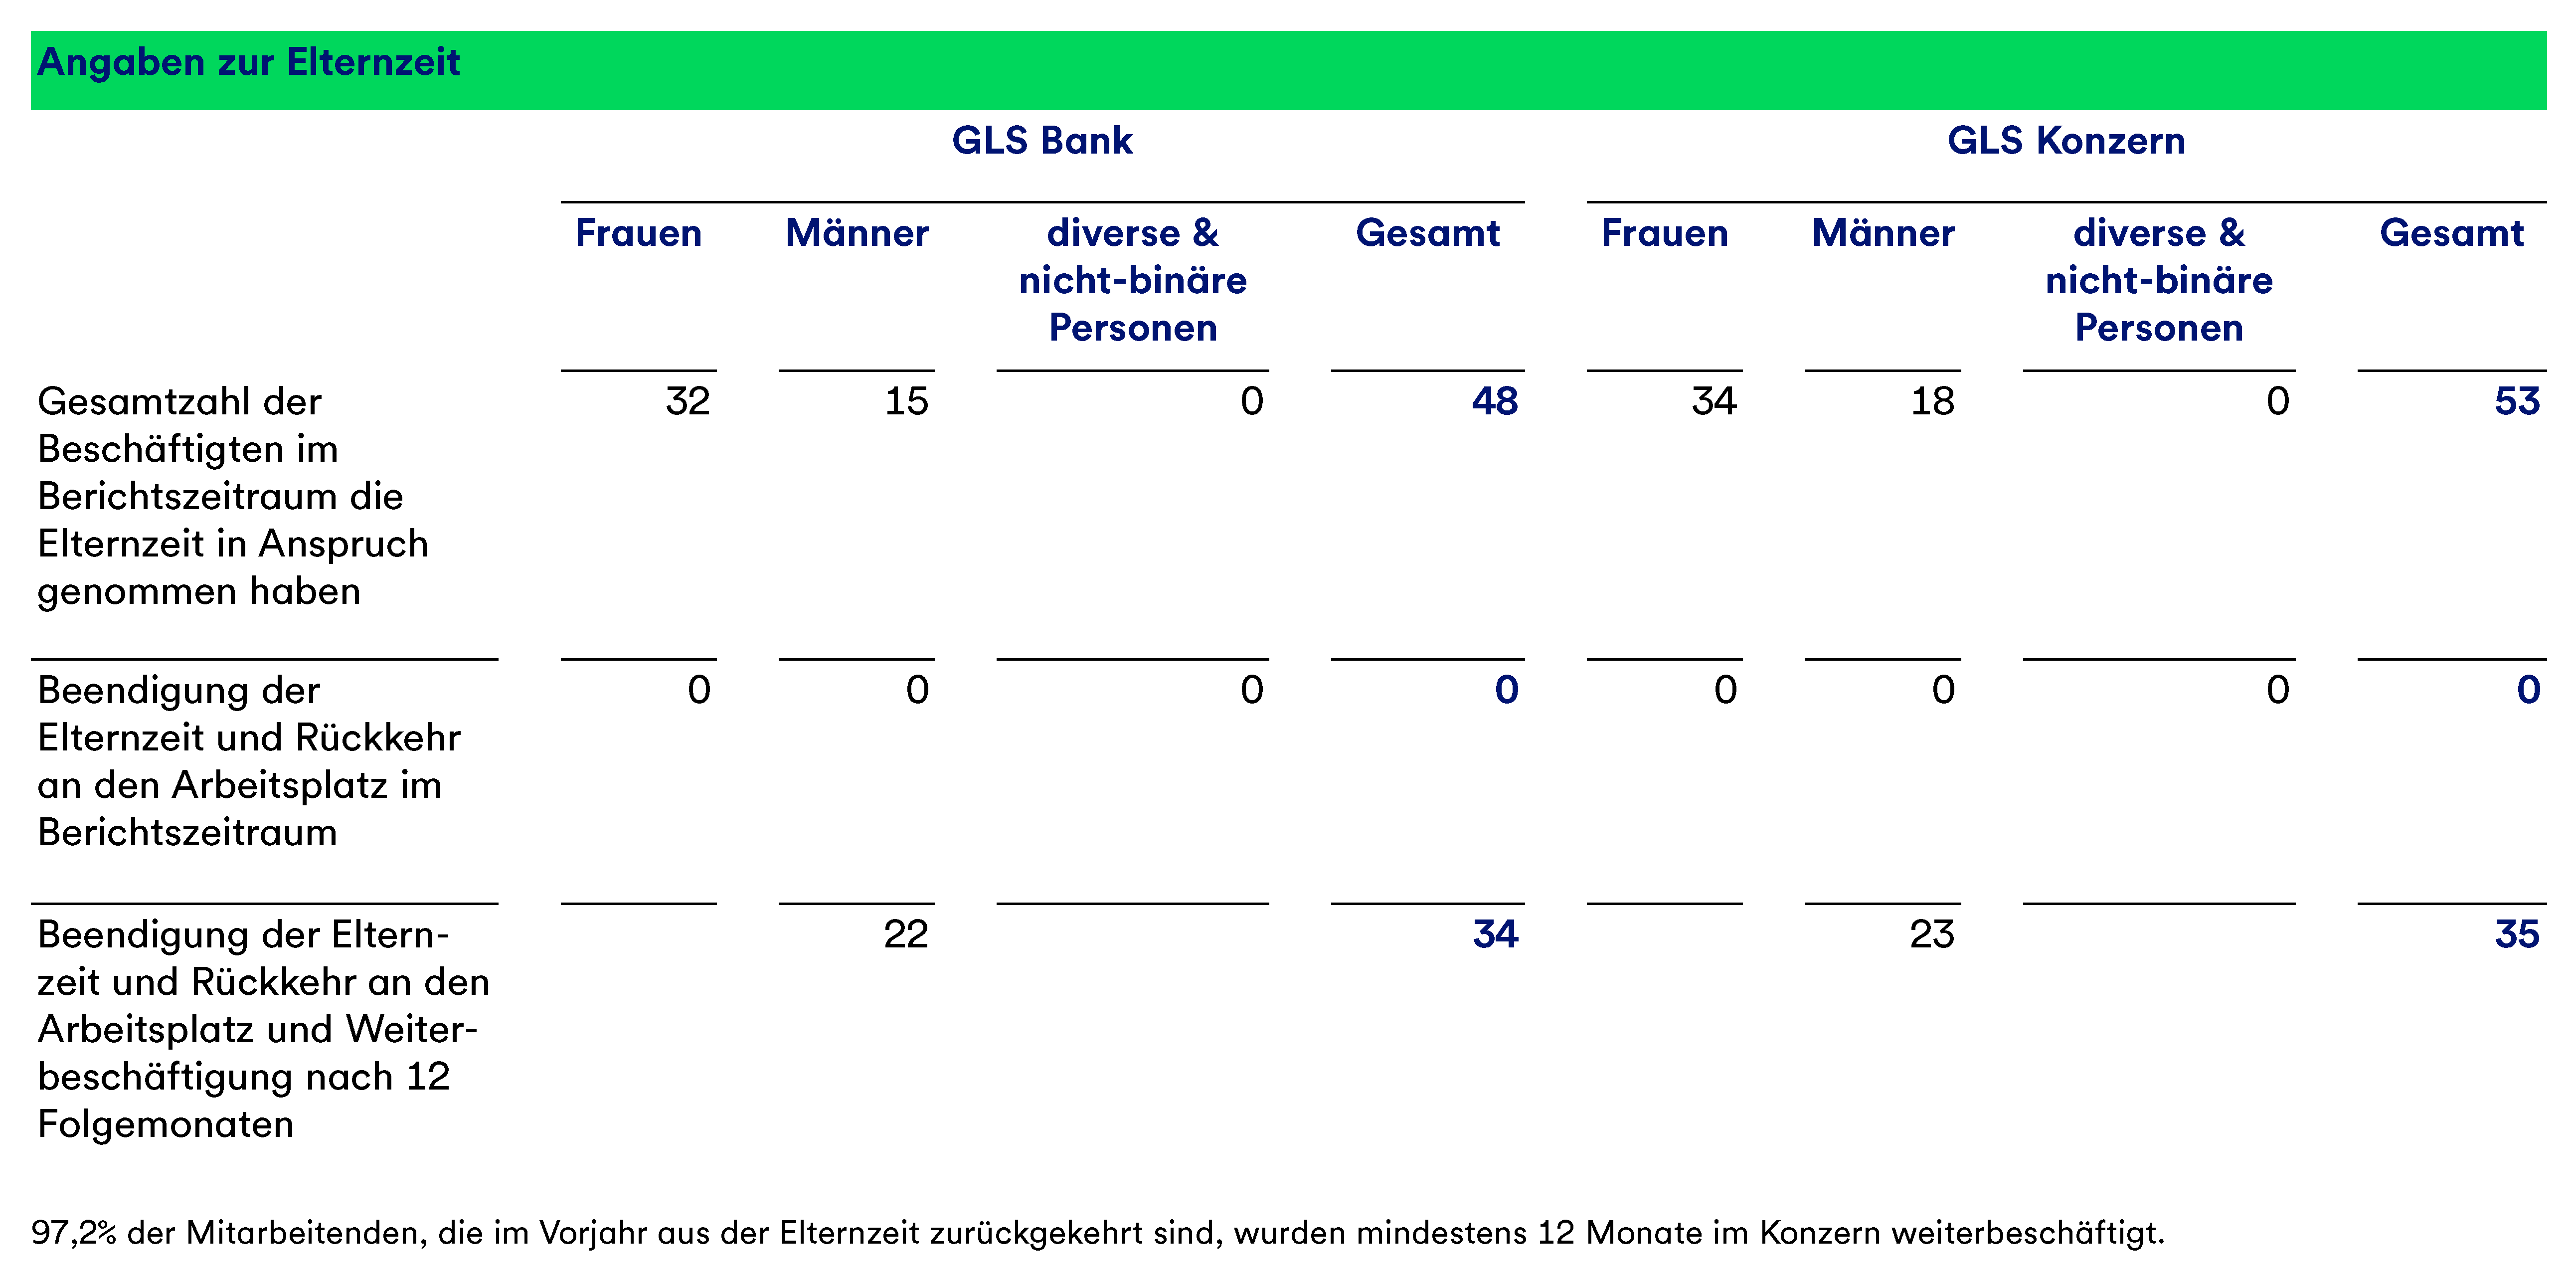 Eine Tabelle, die Angaben zur Elternzeit von Frauen und Männern in der GLS Bank und dem GLS Konzern darstellt.